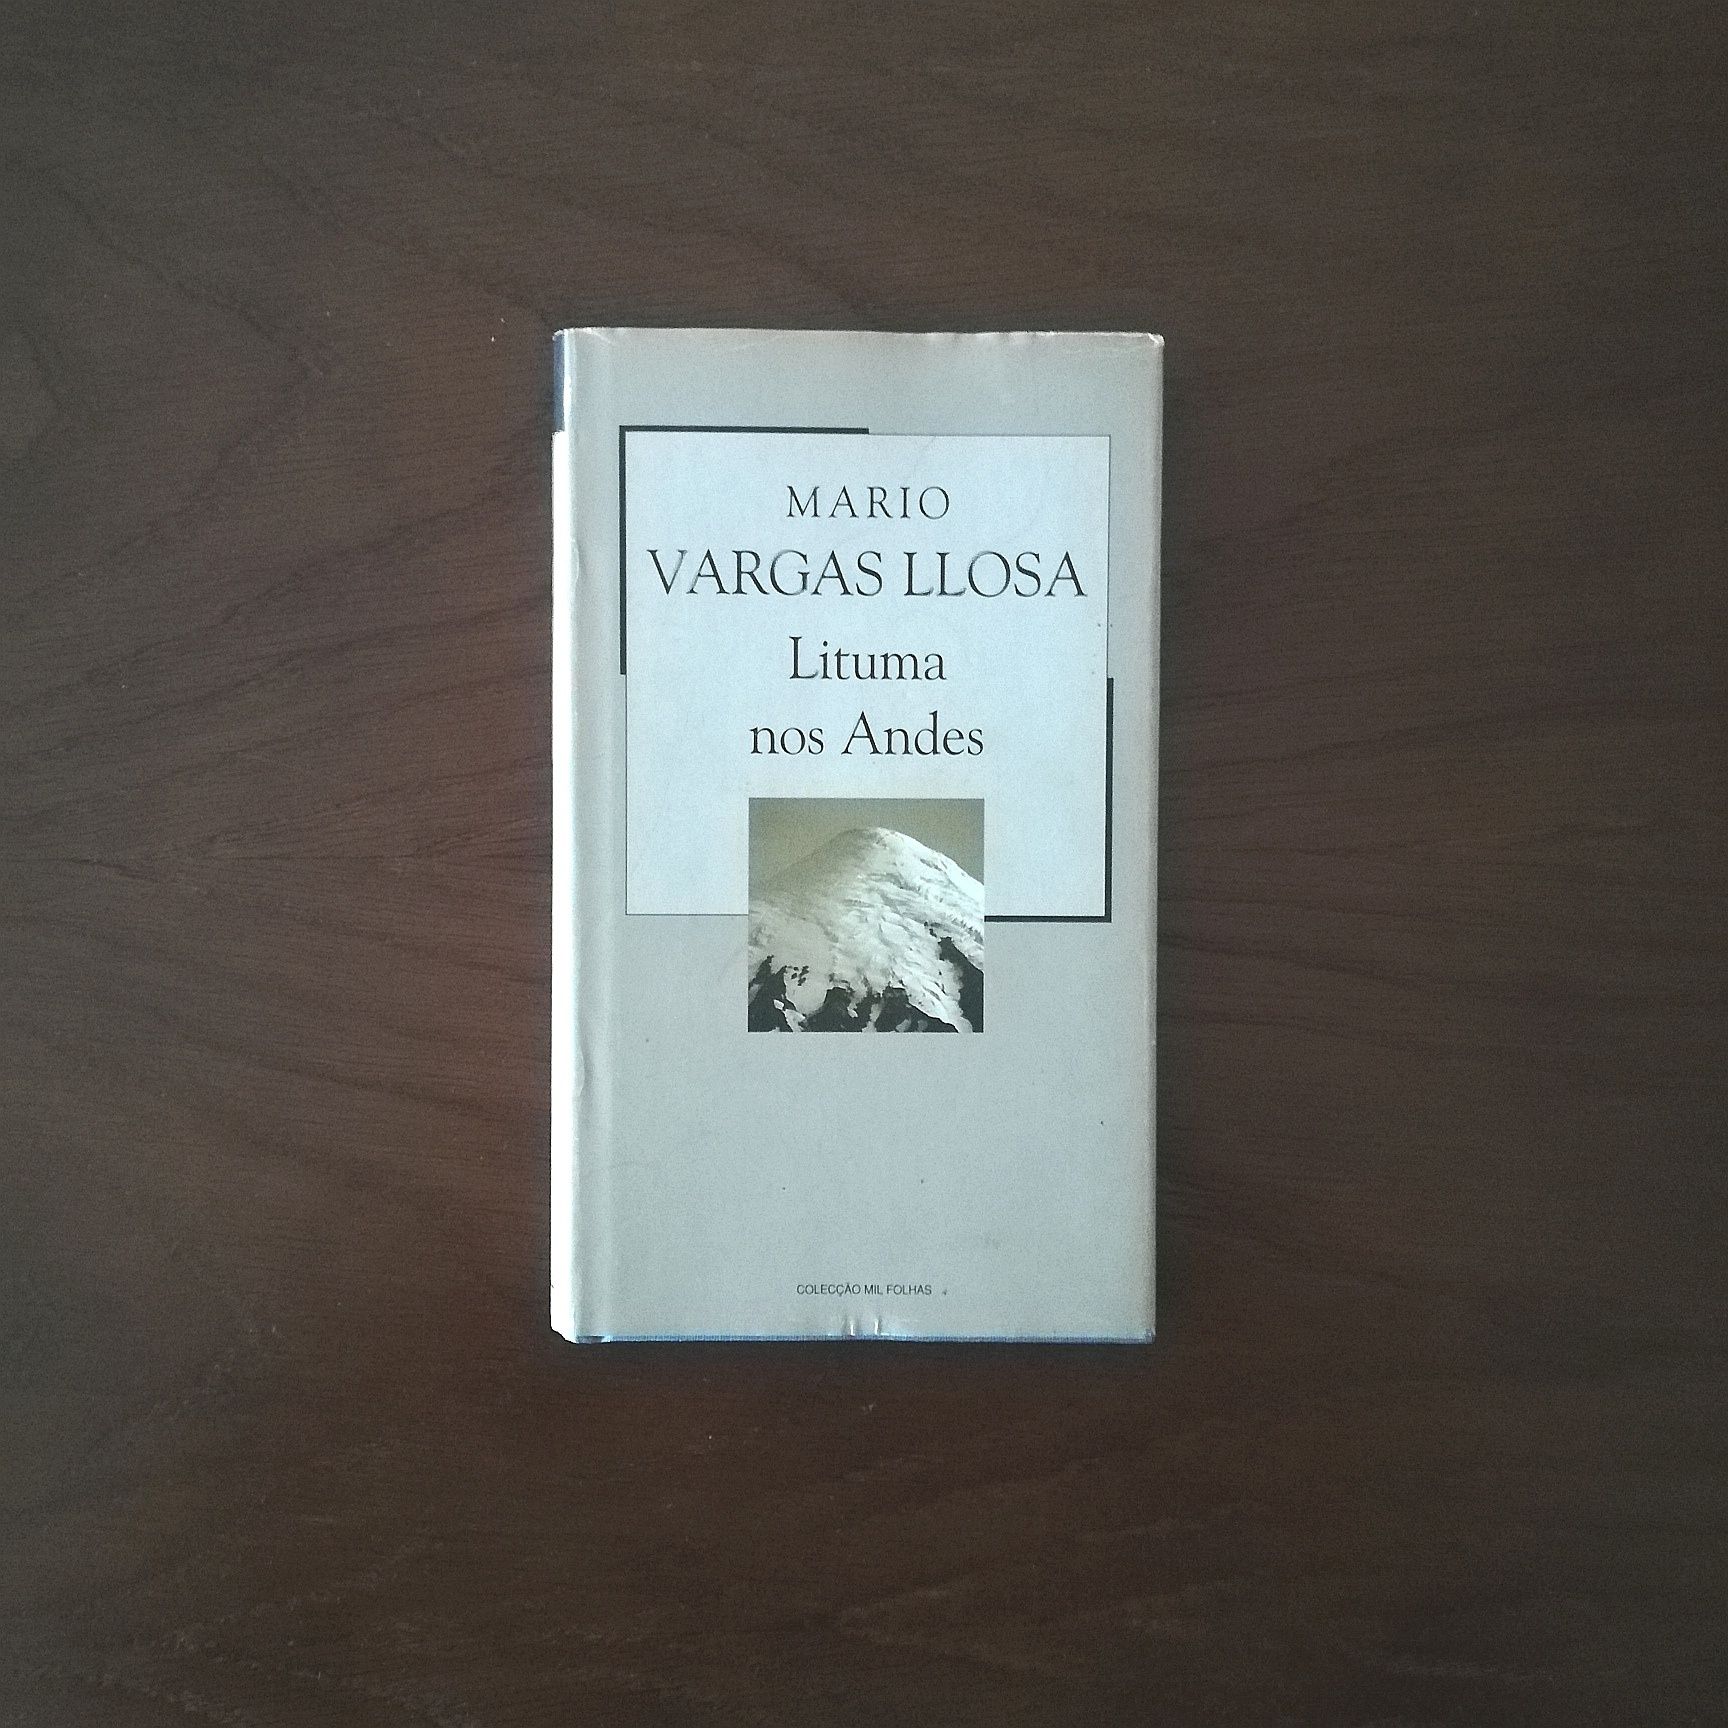 "Lituma nos Andes" de Mário Vargas Llosa 

Entrega em mãos em Vila Nov